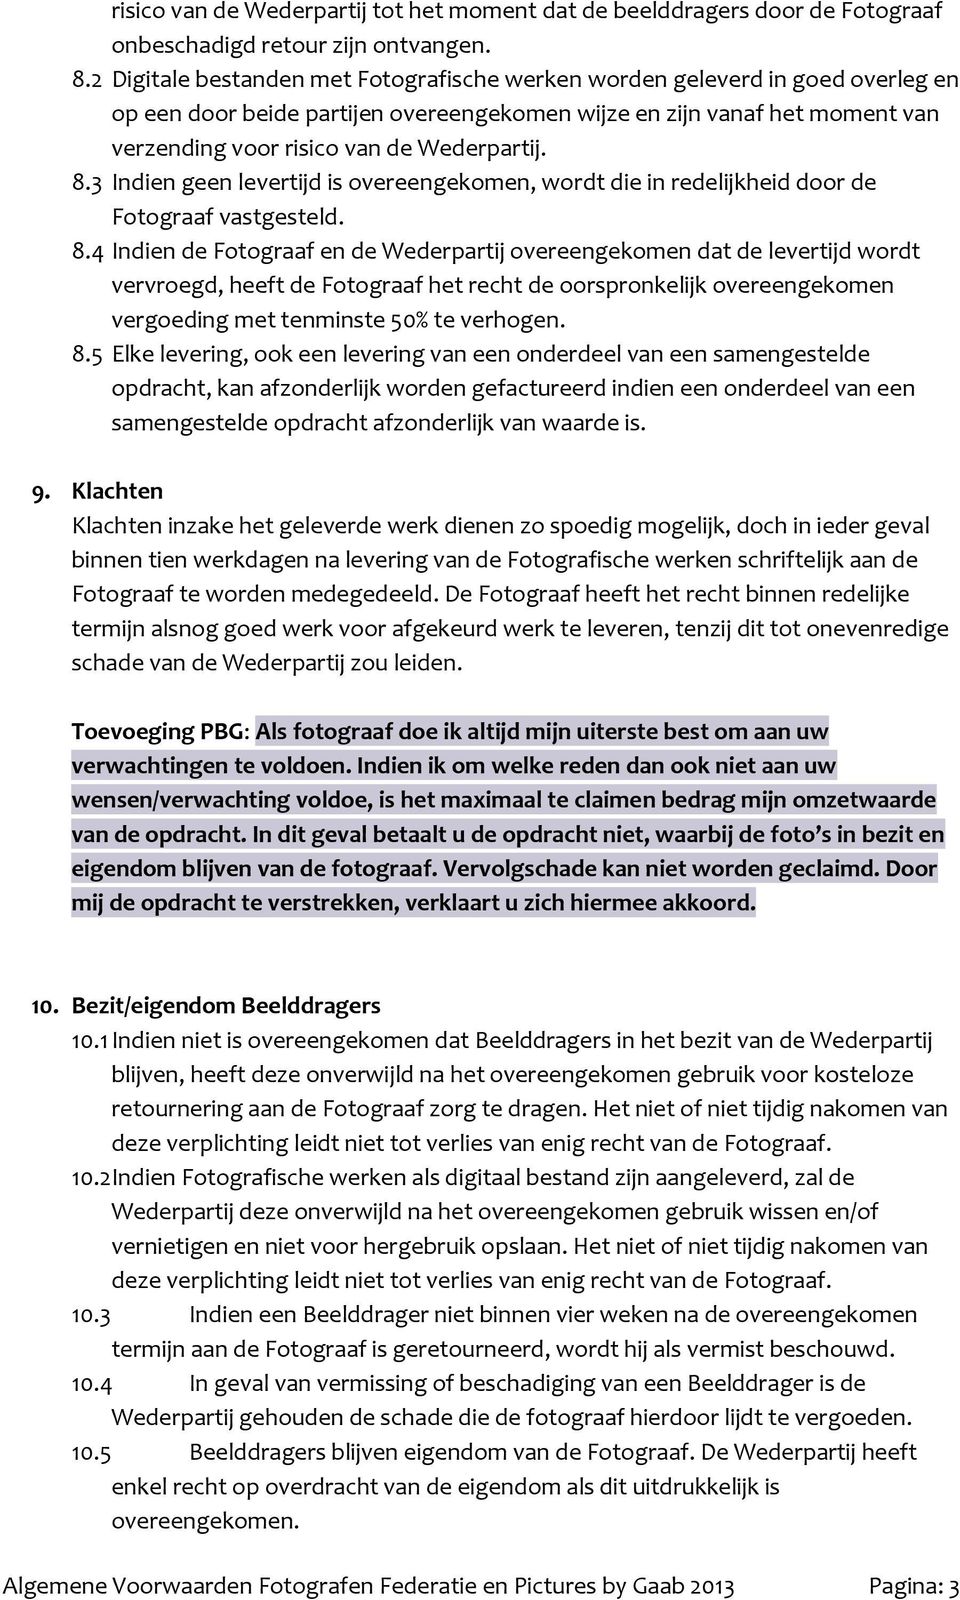 8.3 Indien geen levertijd is overeengekomen, wordt die in redelijkheid door de Fotograaf vastgesteld. 8.